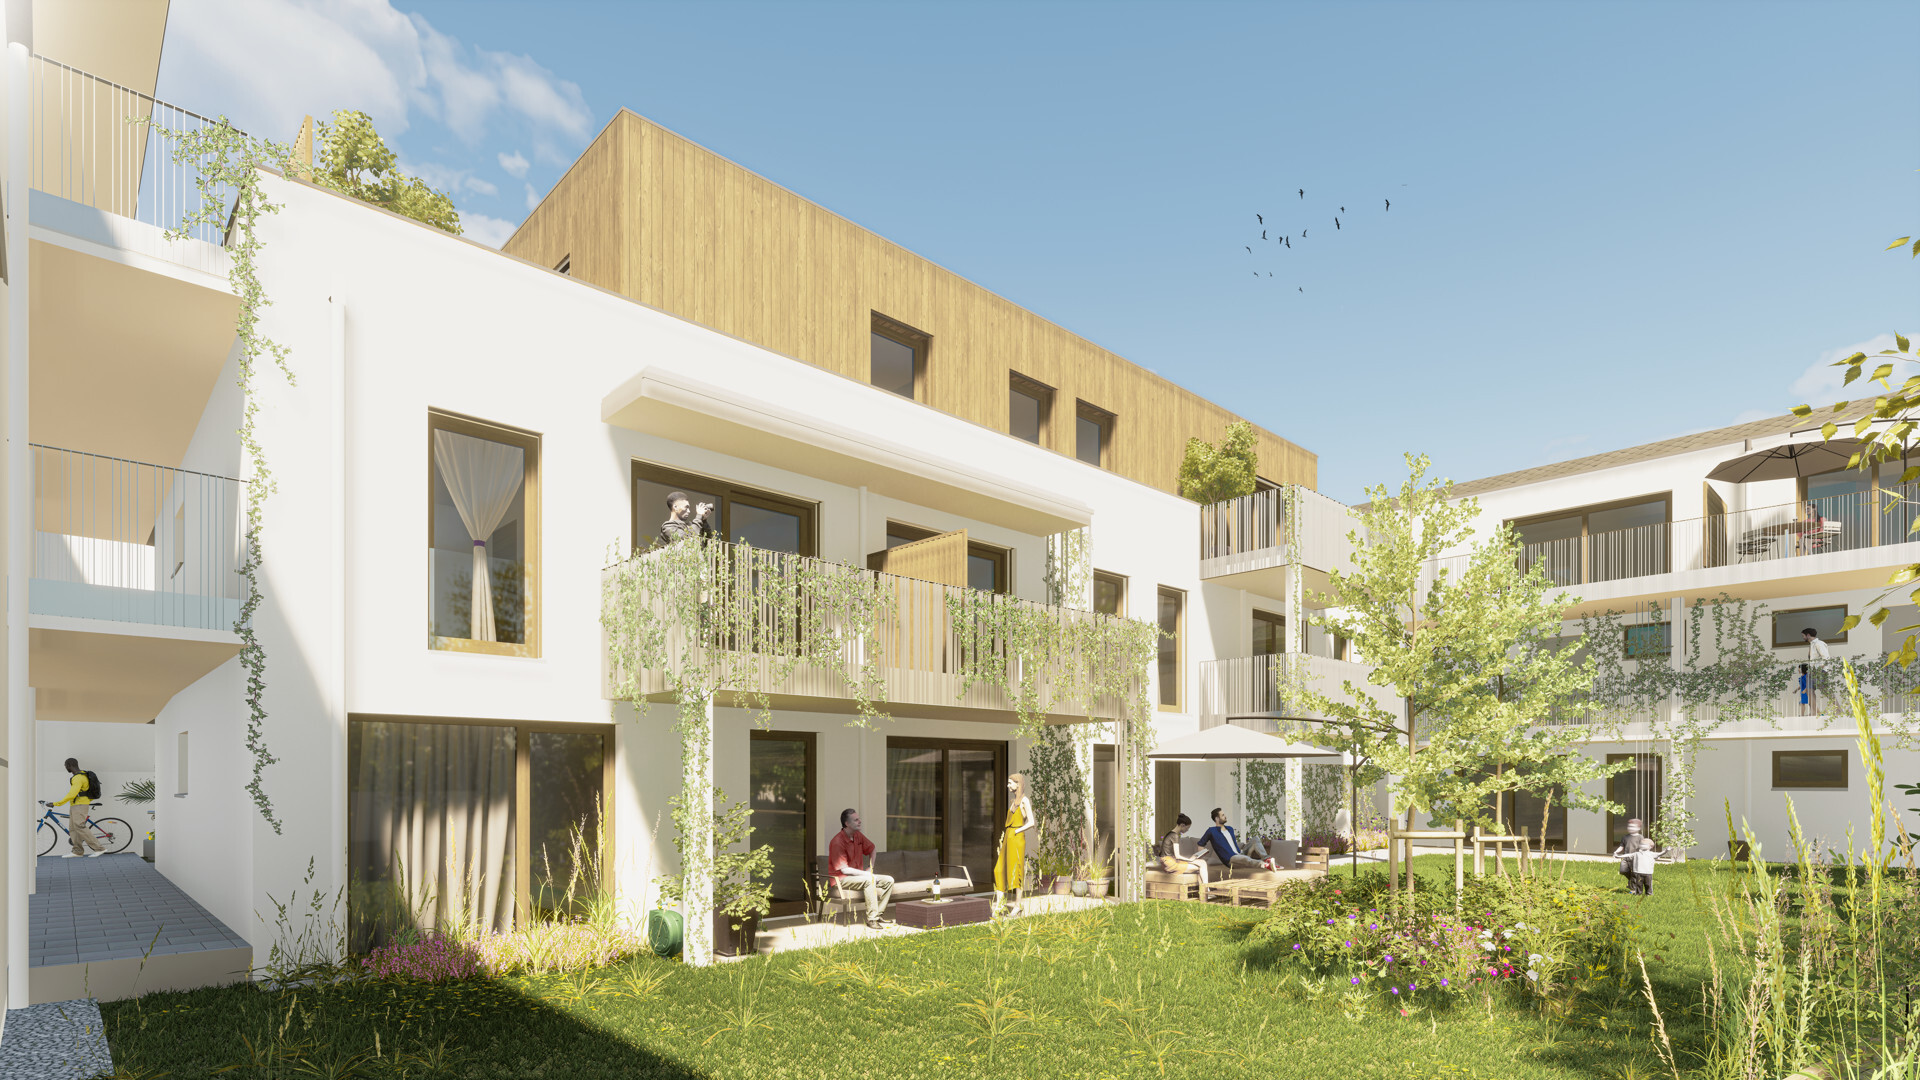 Projekt Mödling, nachhaltiges und naturnahes Wohnen in perfekter Lage - zu kaufen in 2340 Mödling